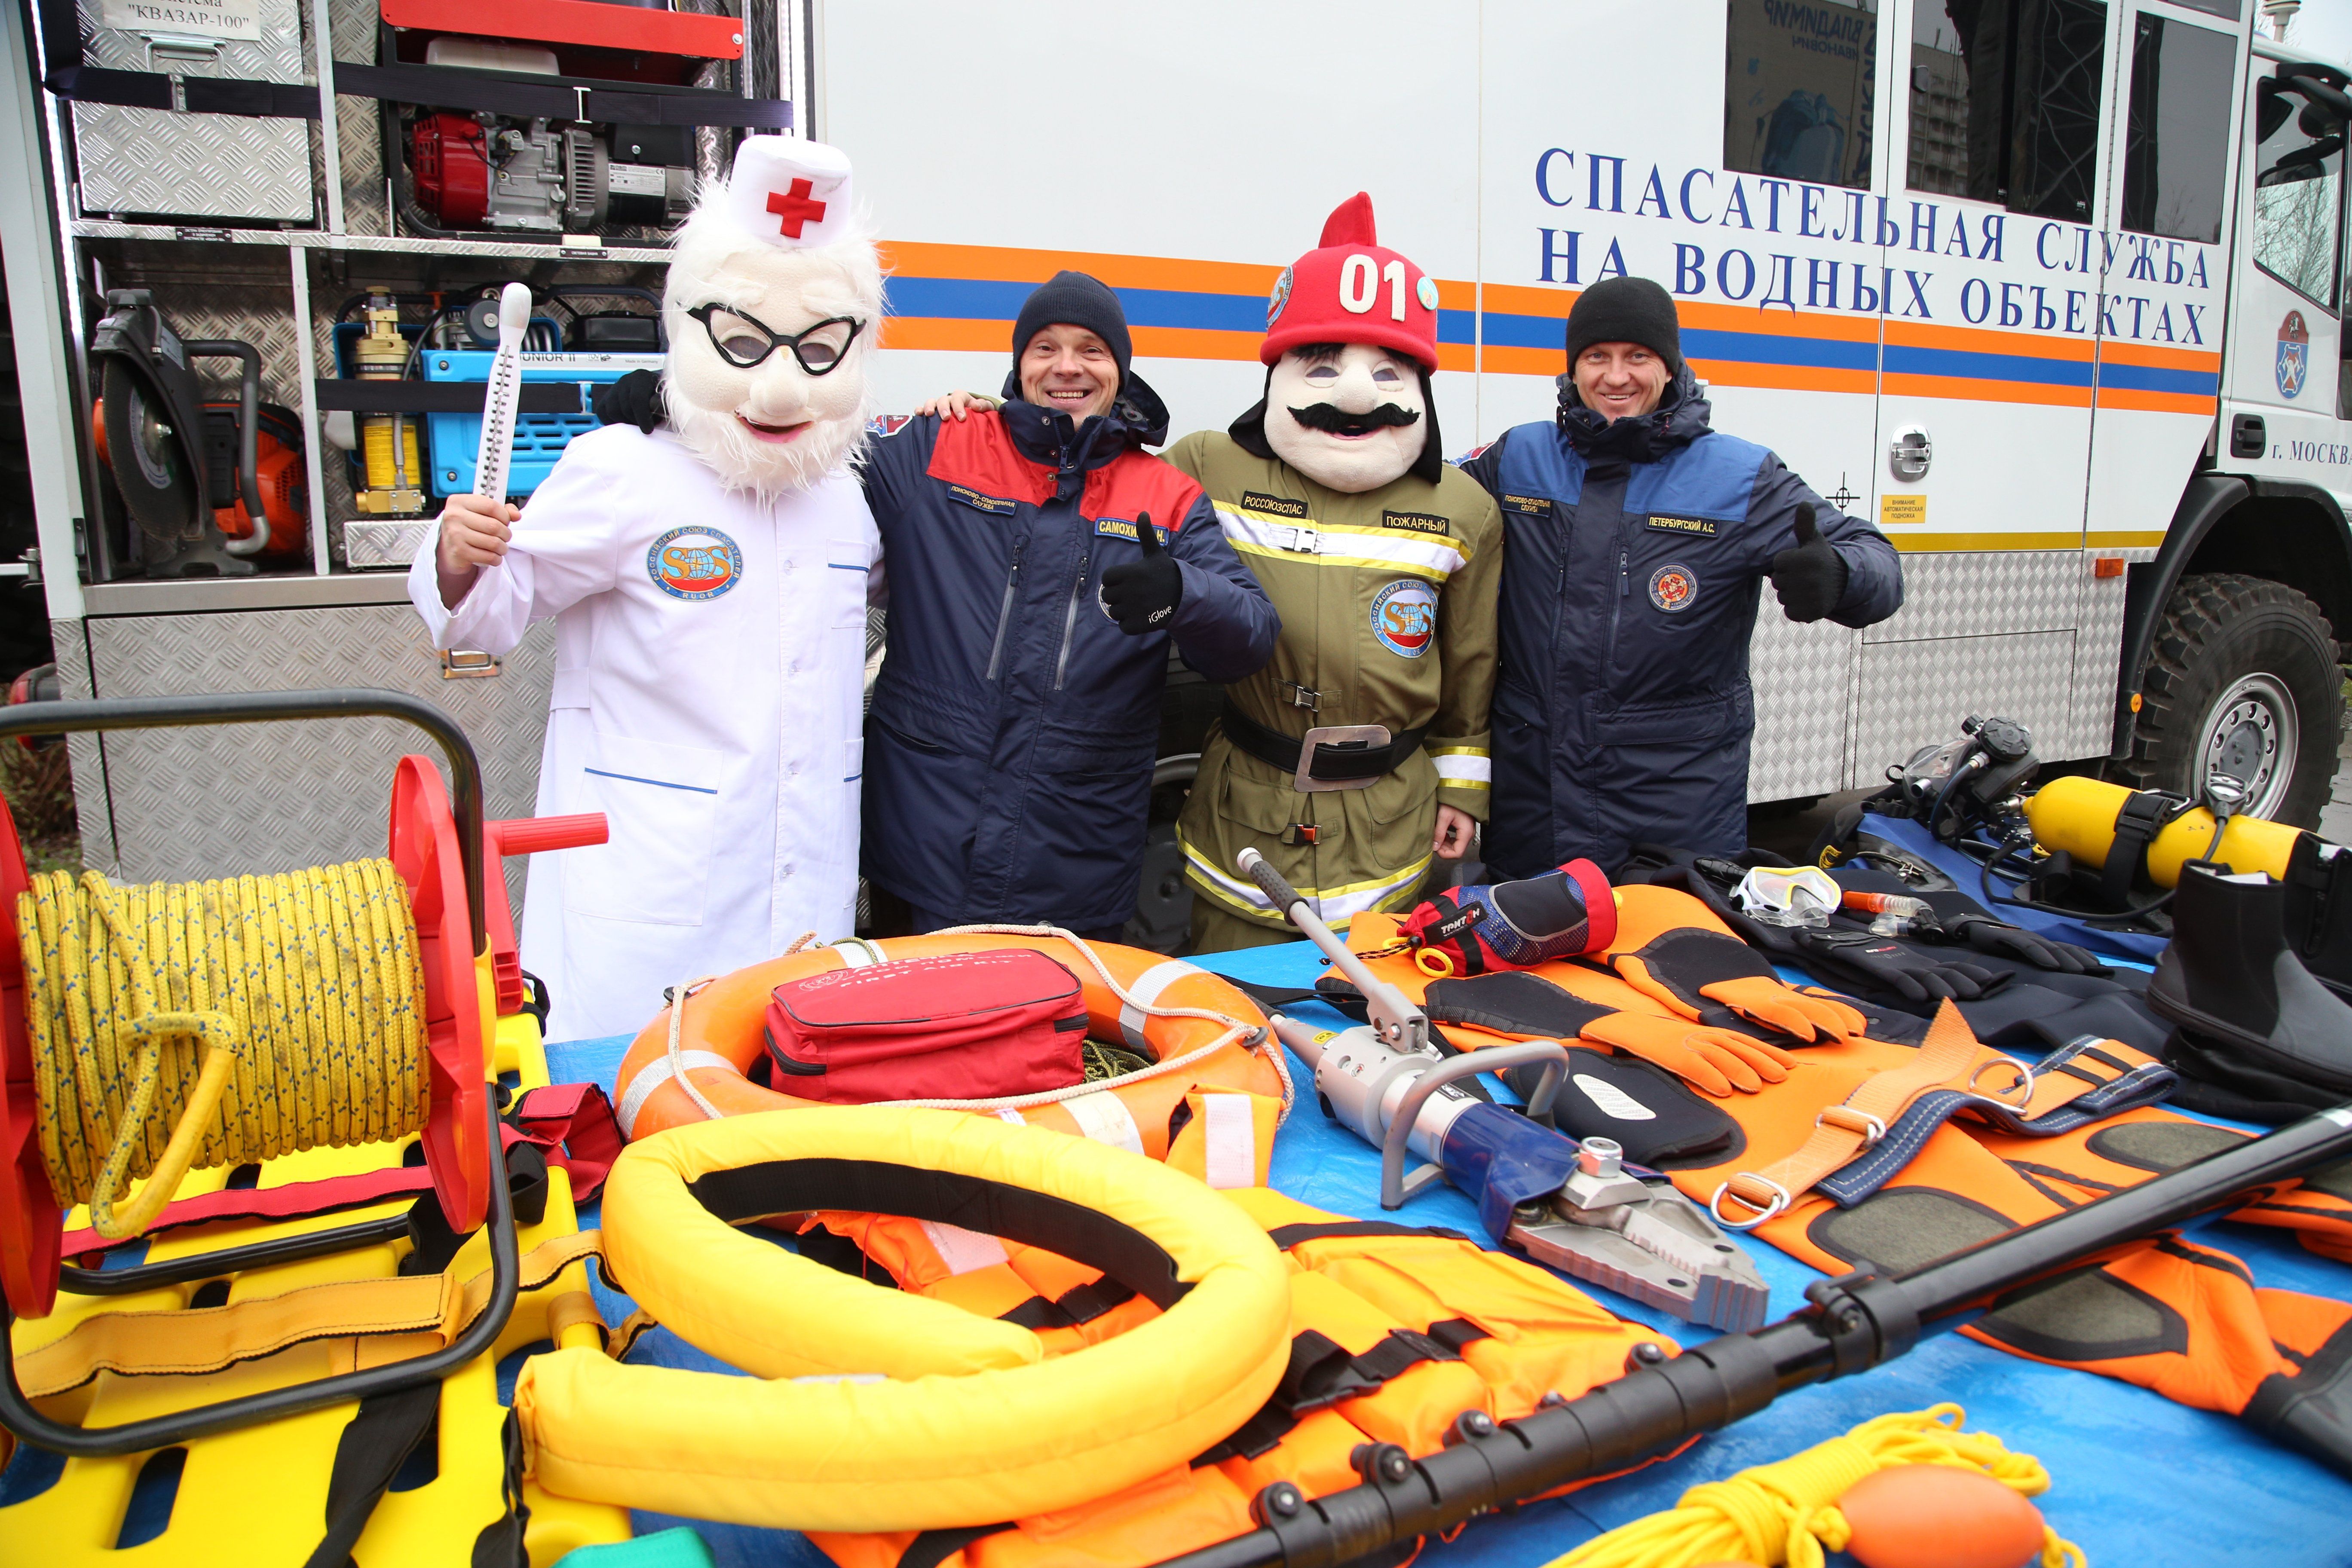 Московские спасатели на водных объектах подвели итоги работы в ноябре  ситуациям и пожарной безопасности города Москвы